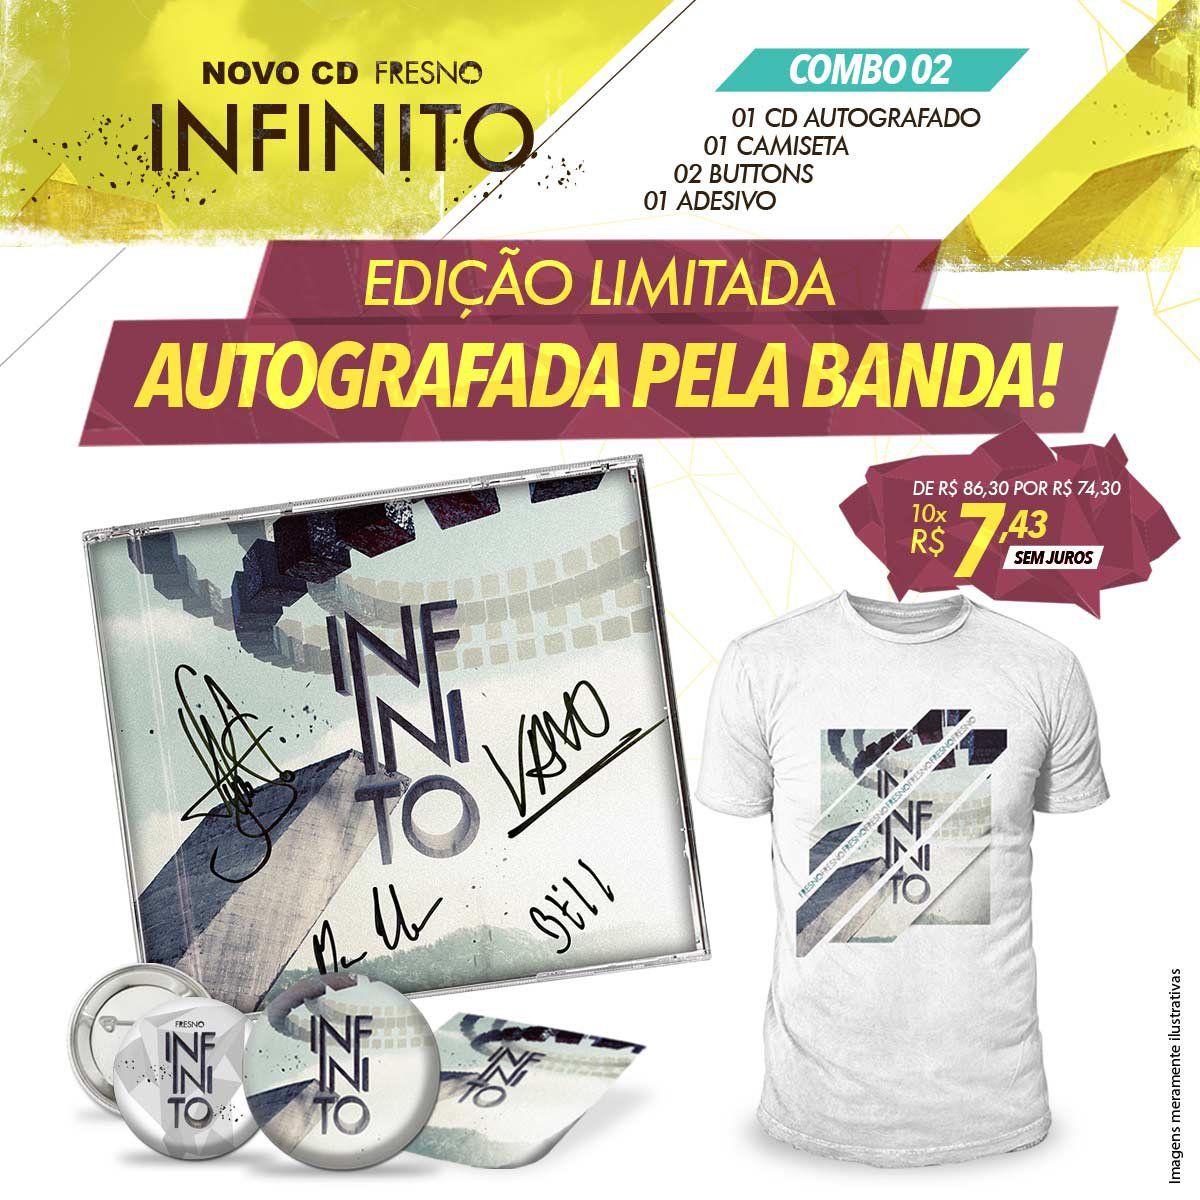 Combo Fresno Infinito - CD Autografado + Button + Adesivo + Camiseta